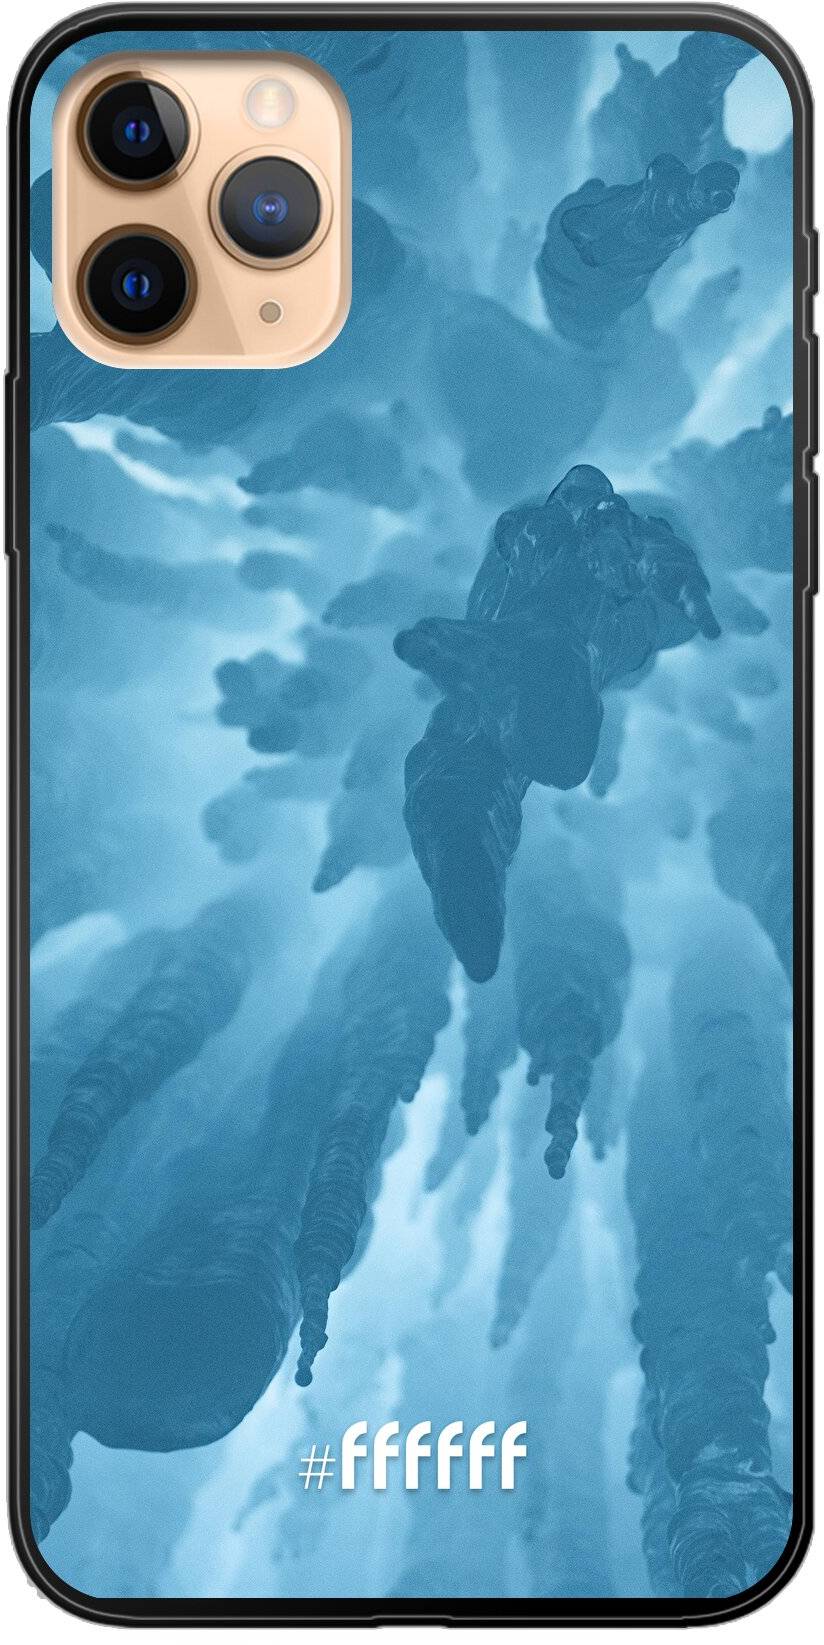 Ice Stalactite iPhone 11 Pro Max